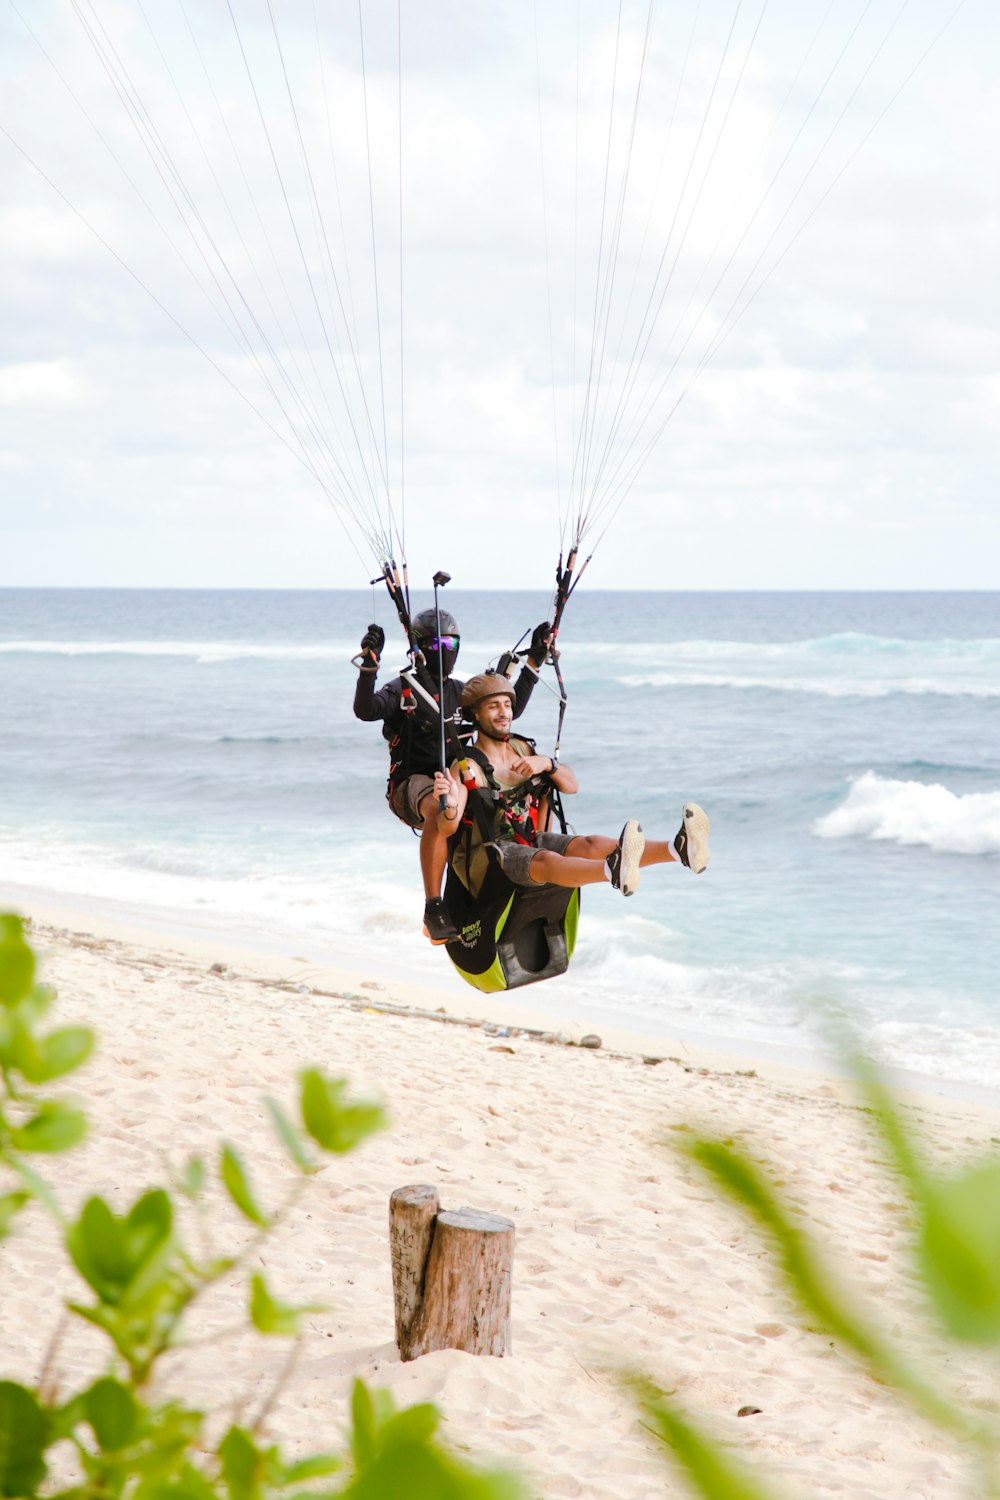 Un grupo de personas lanzándose en paracaídas